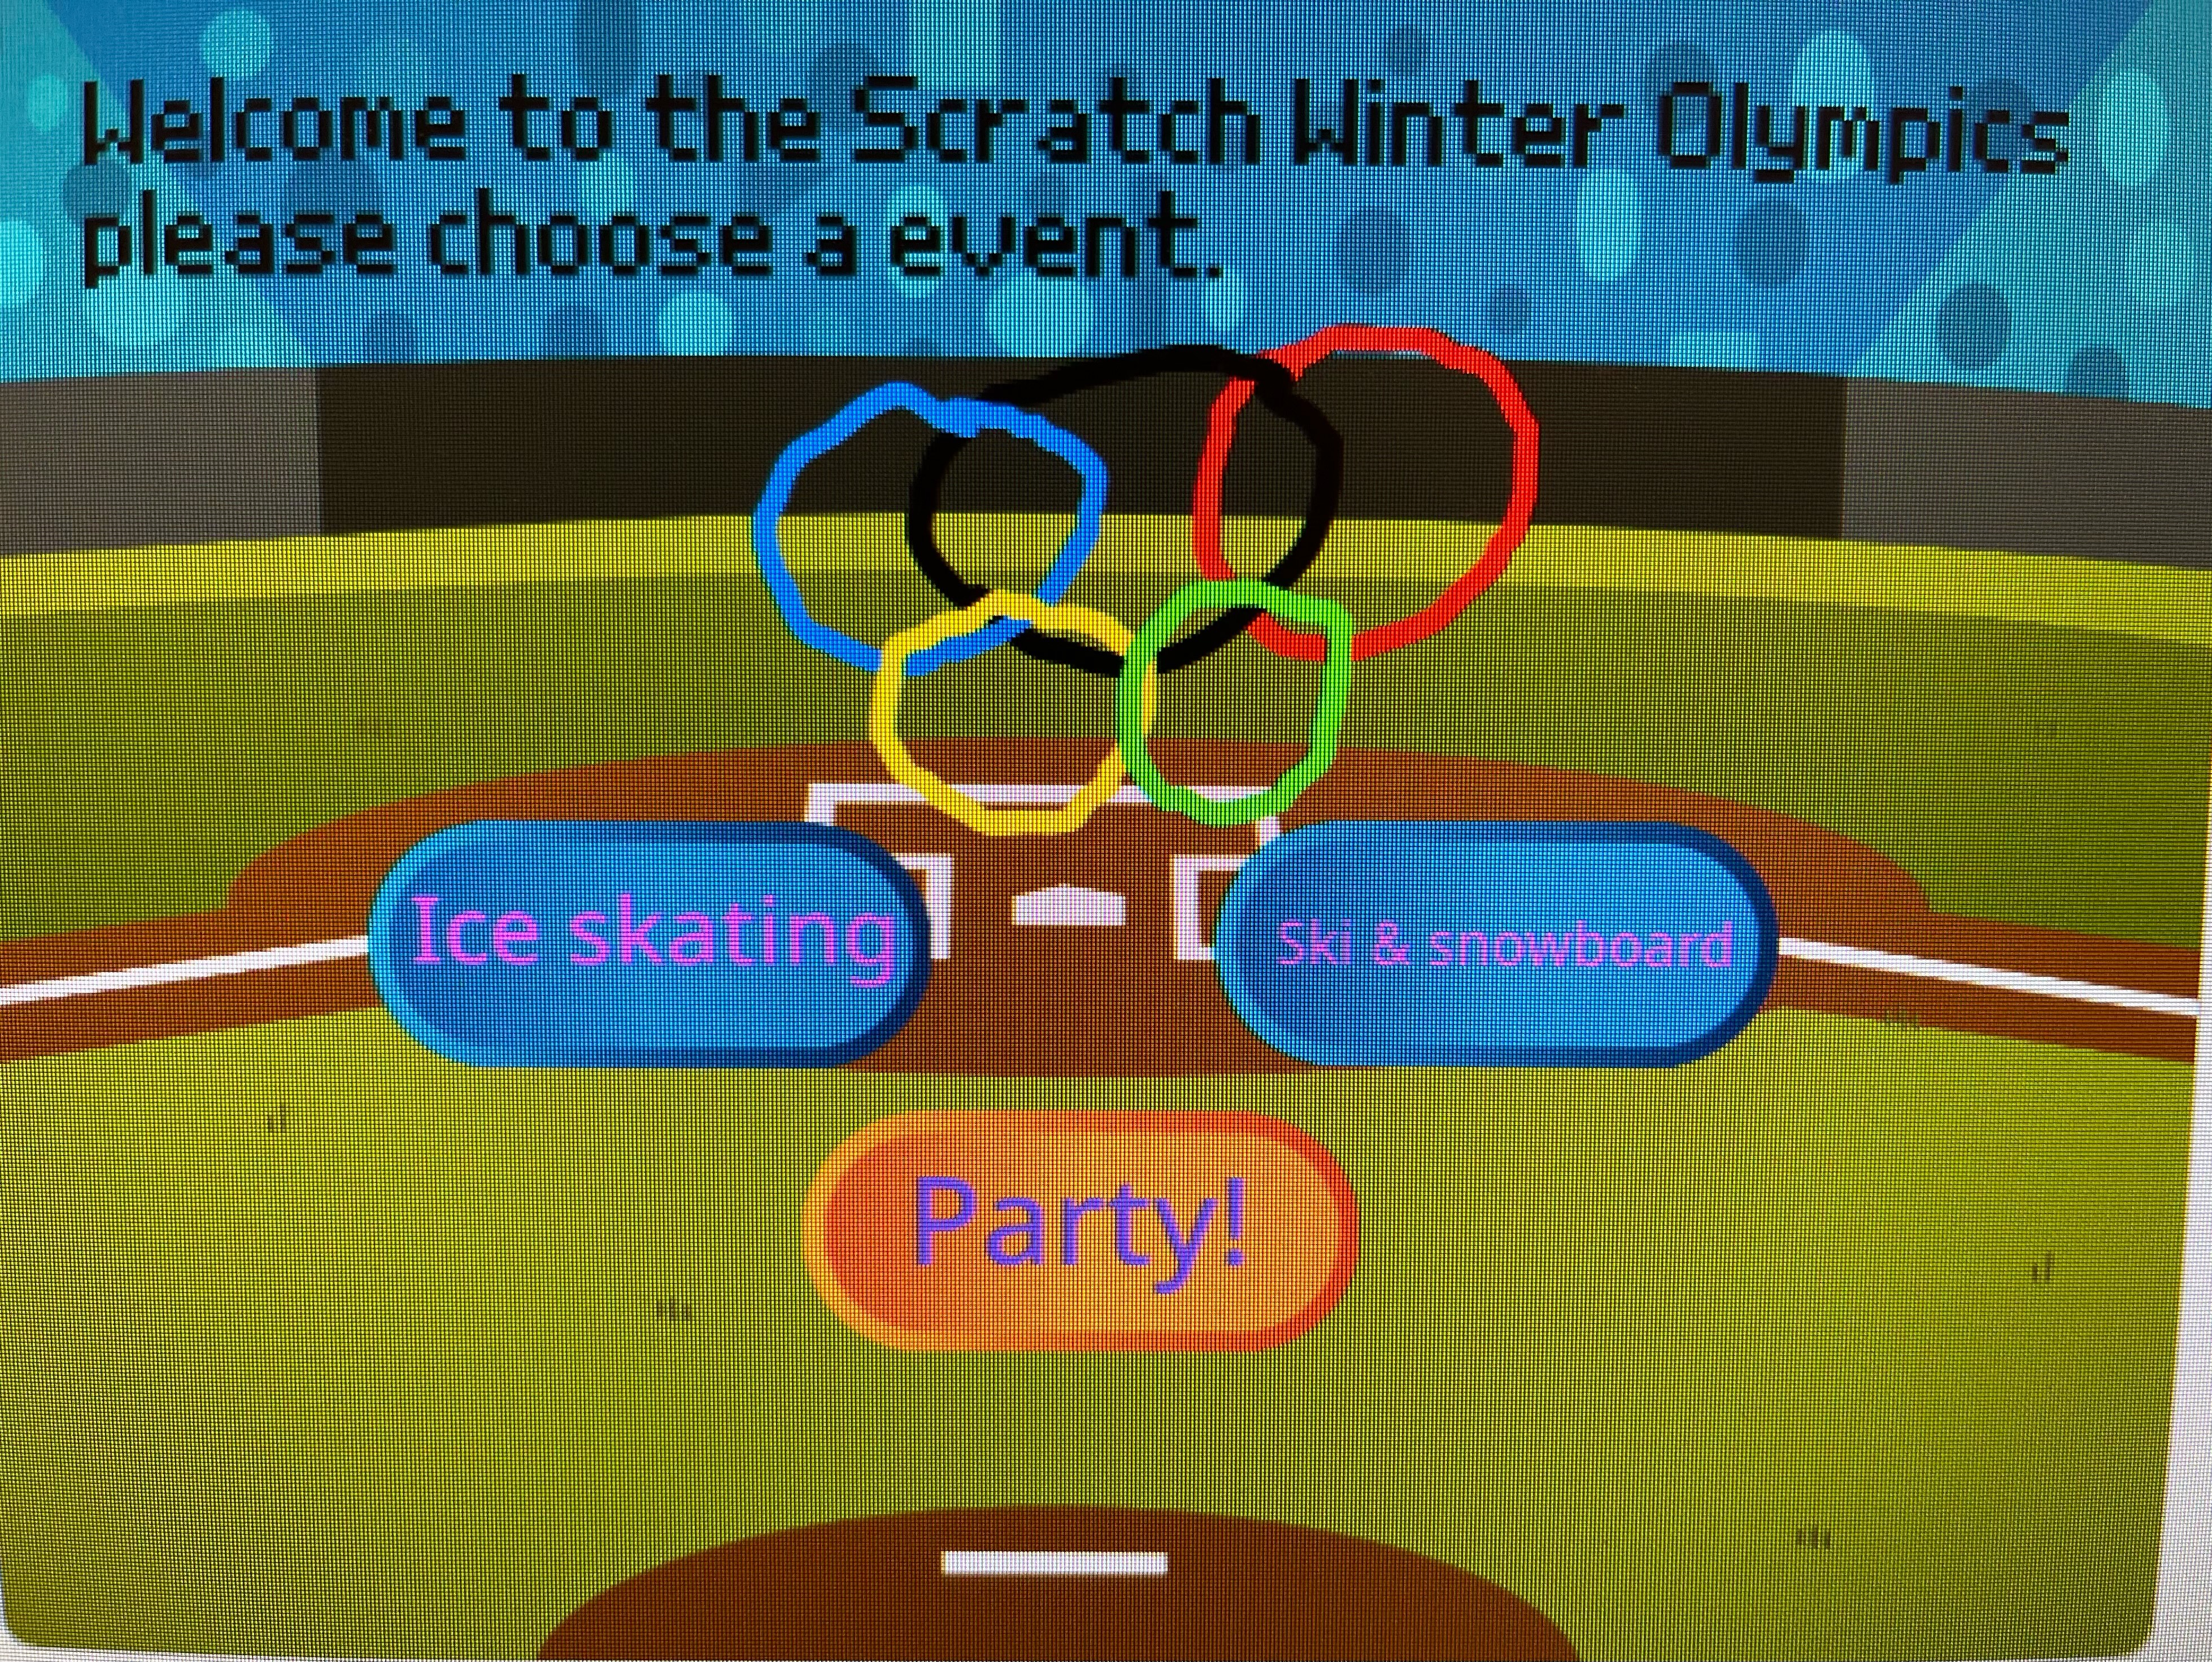 Scratch Winter Olympics!